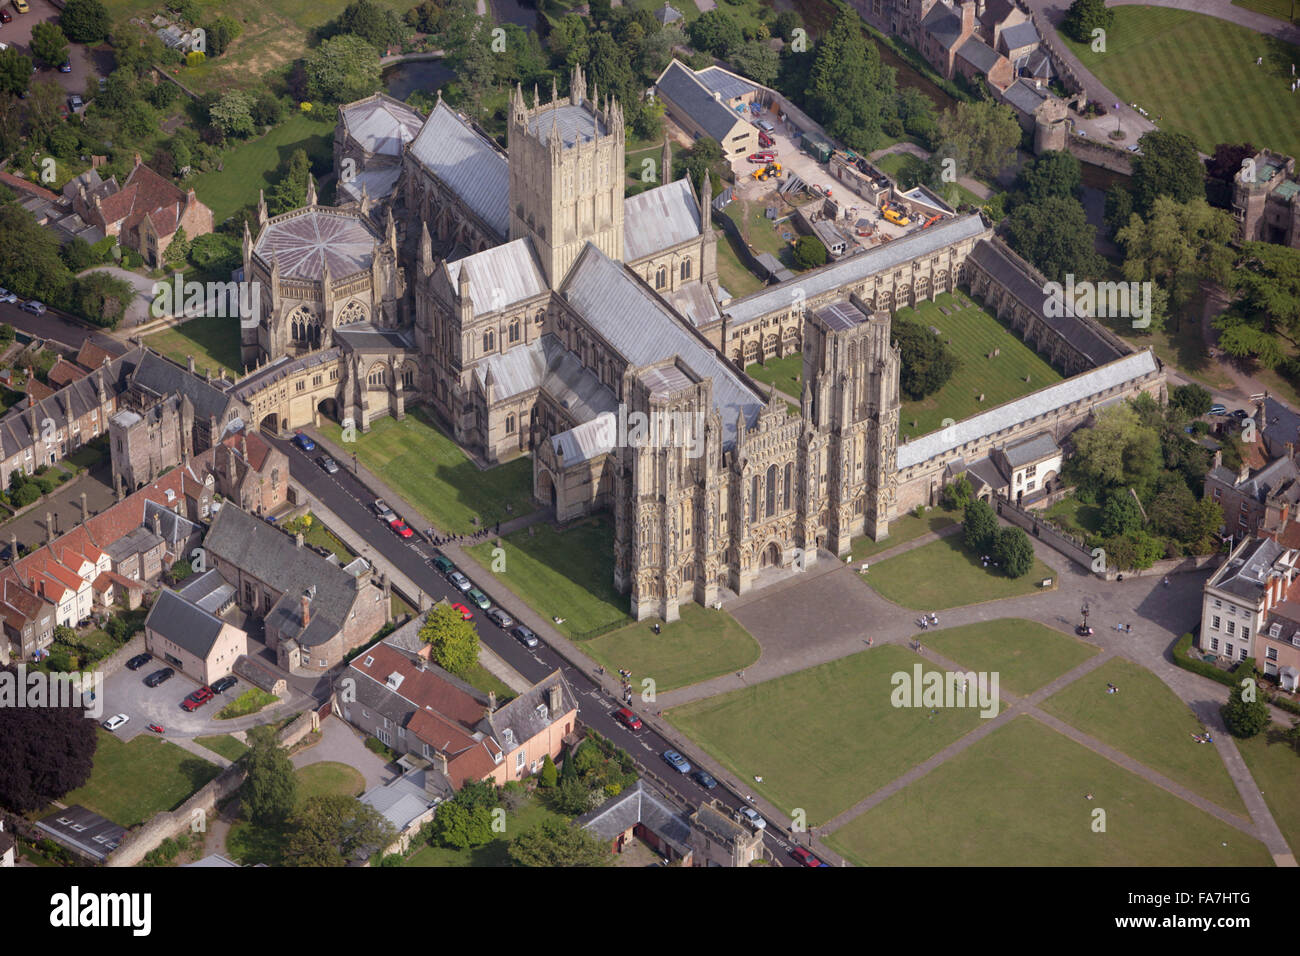 La cathédrale de Wells, Somerset. Siège de l'évêque de Bath et Wells, la cathédrale est sensiblement au début English style typique de la fin du 12ème et début 13ème siècles. Cette vue aérienne est de juin 2006. Banque D'Images